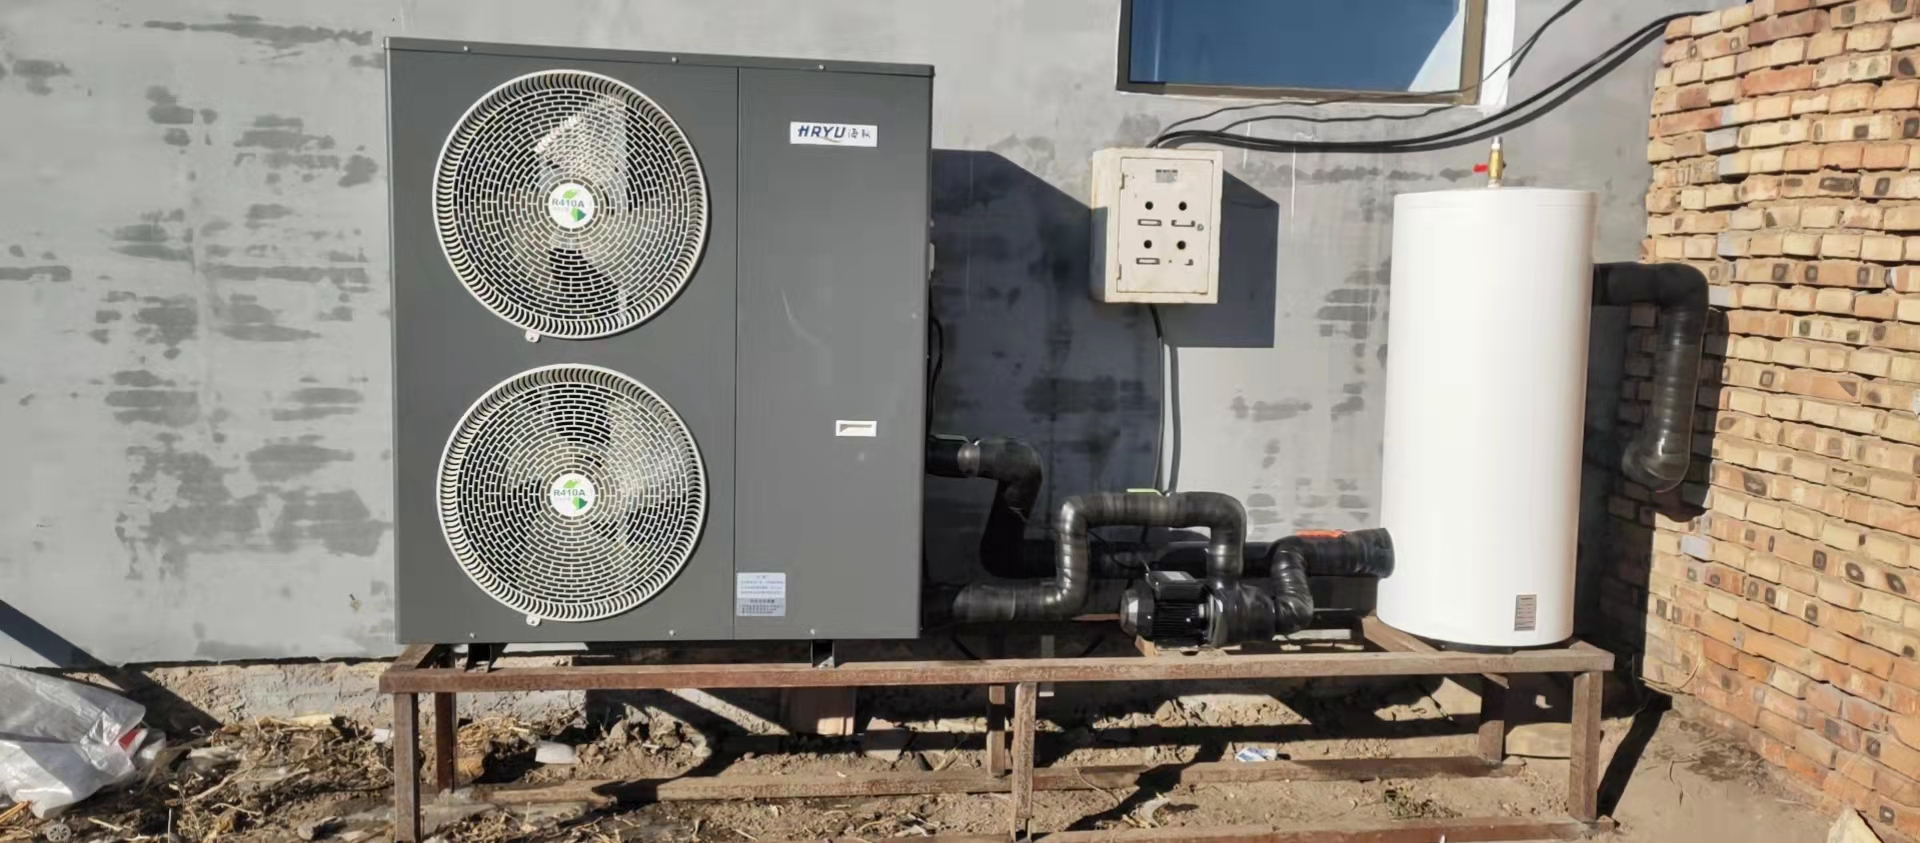 內蒙古赤峰農村自建房采用超低溫空氣能熱泵機組